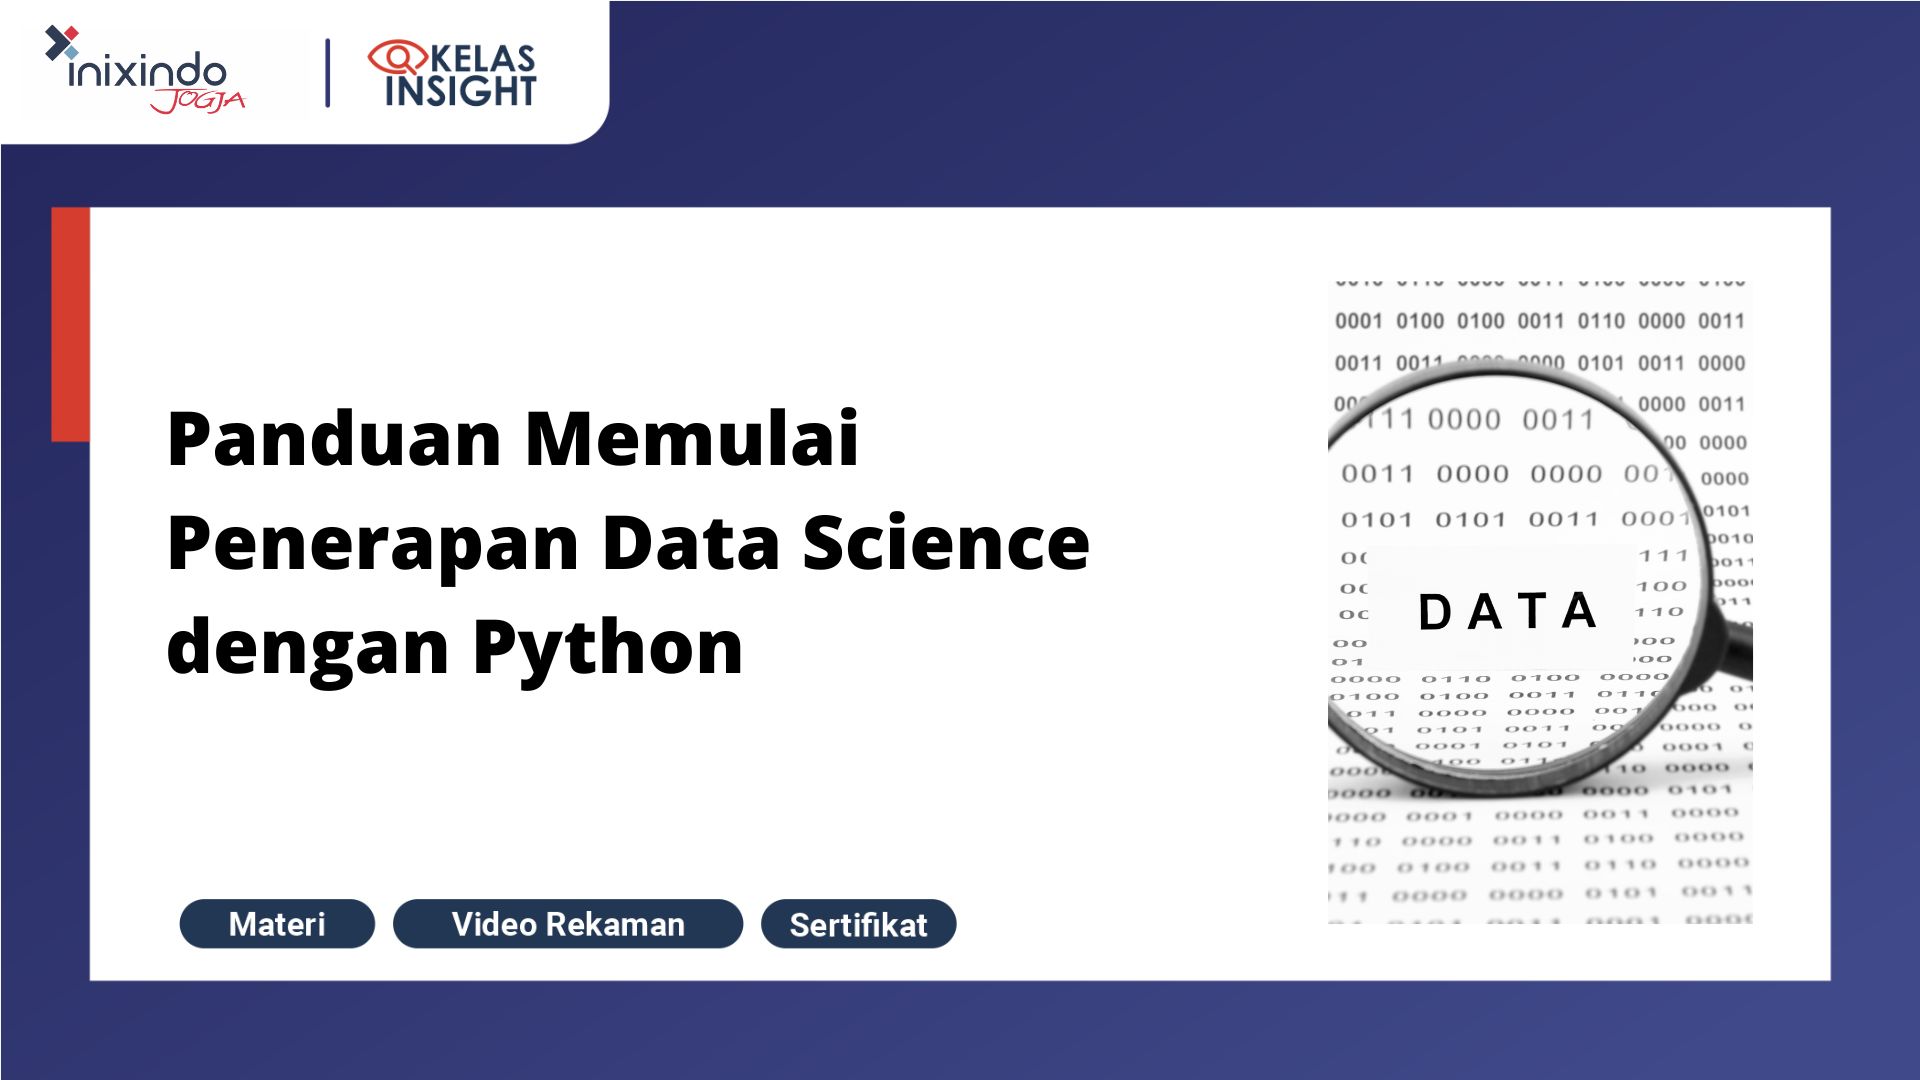 Webinar Panduan Memulai Penerapan Data Science dengan Python 1